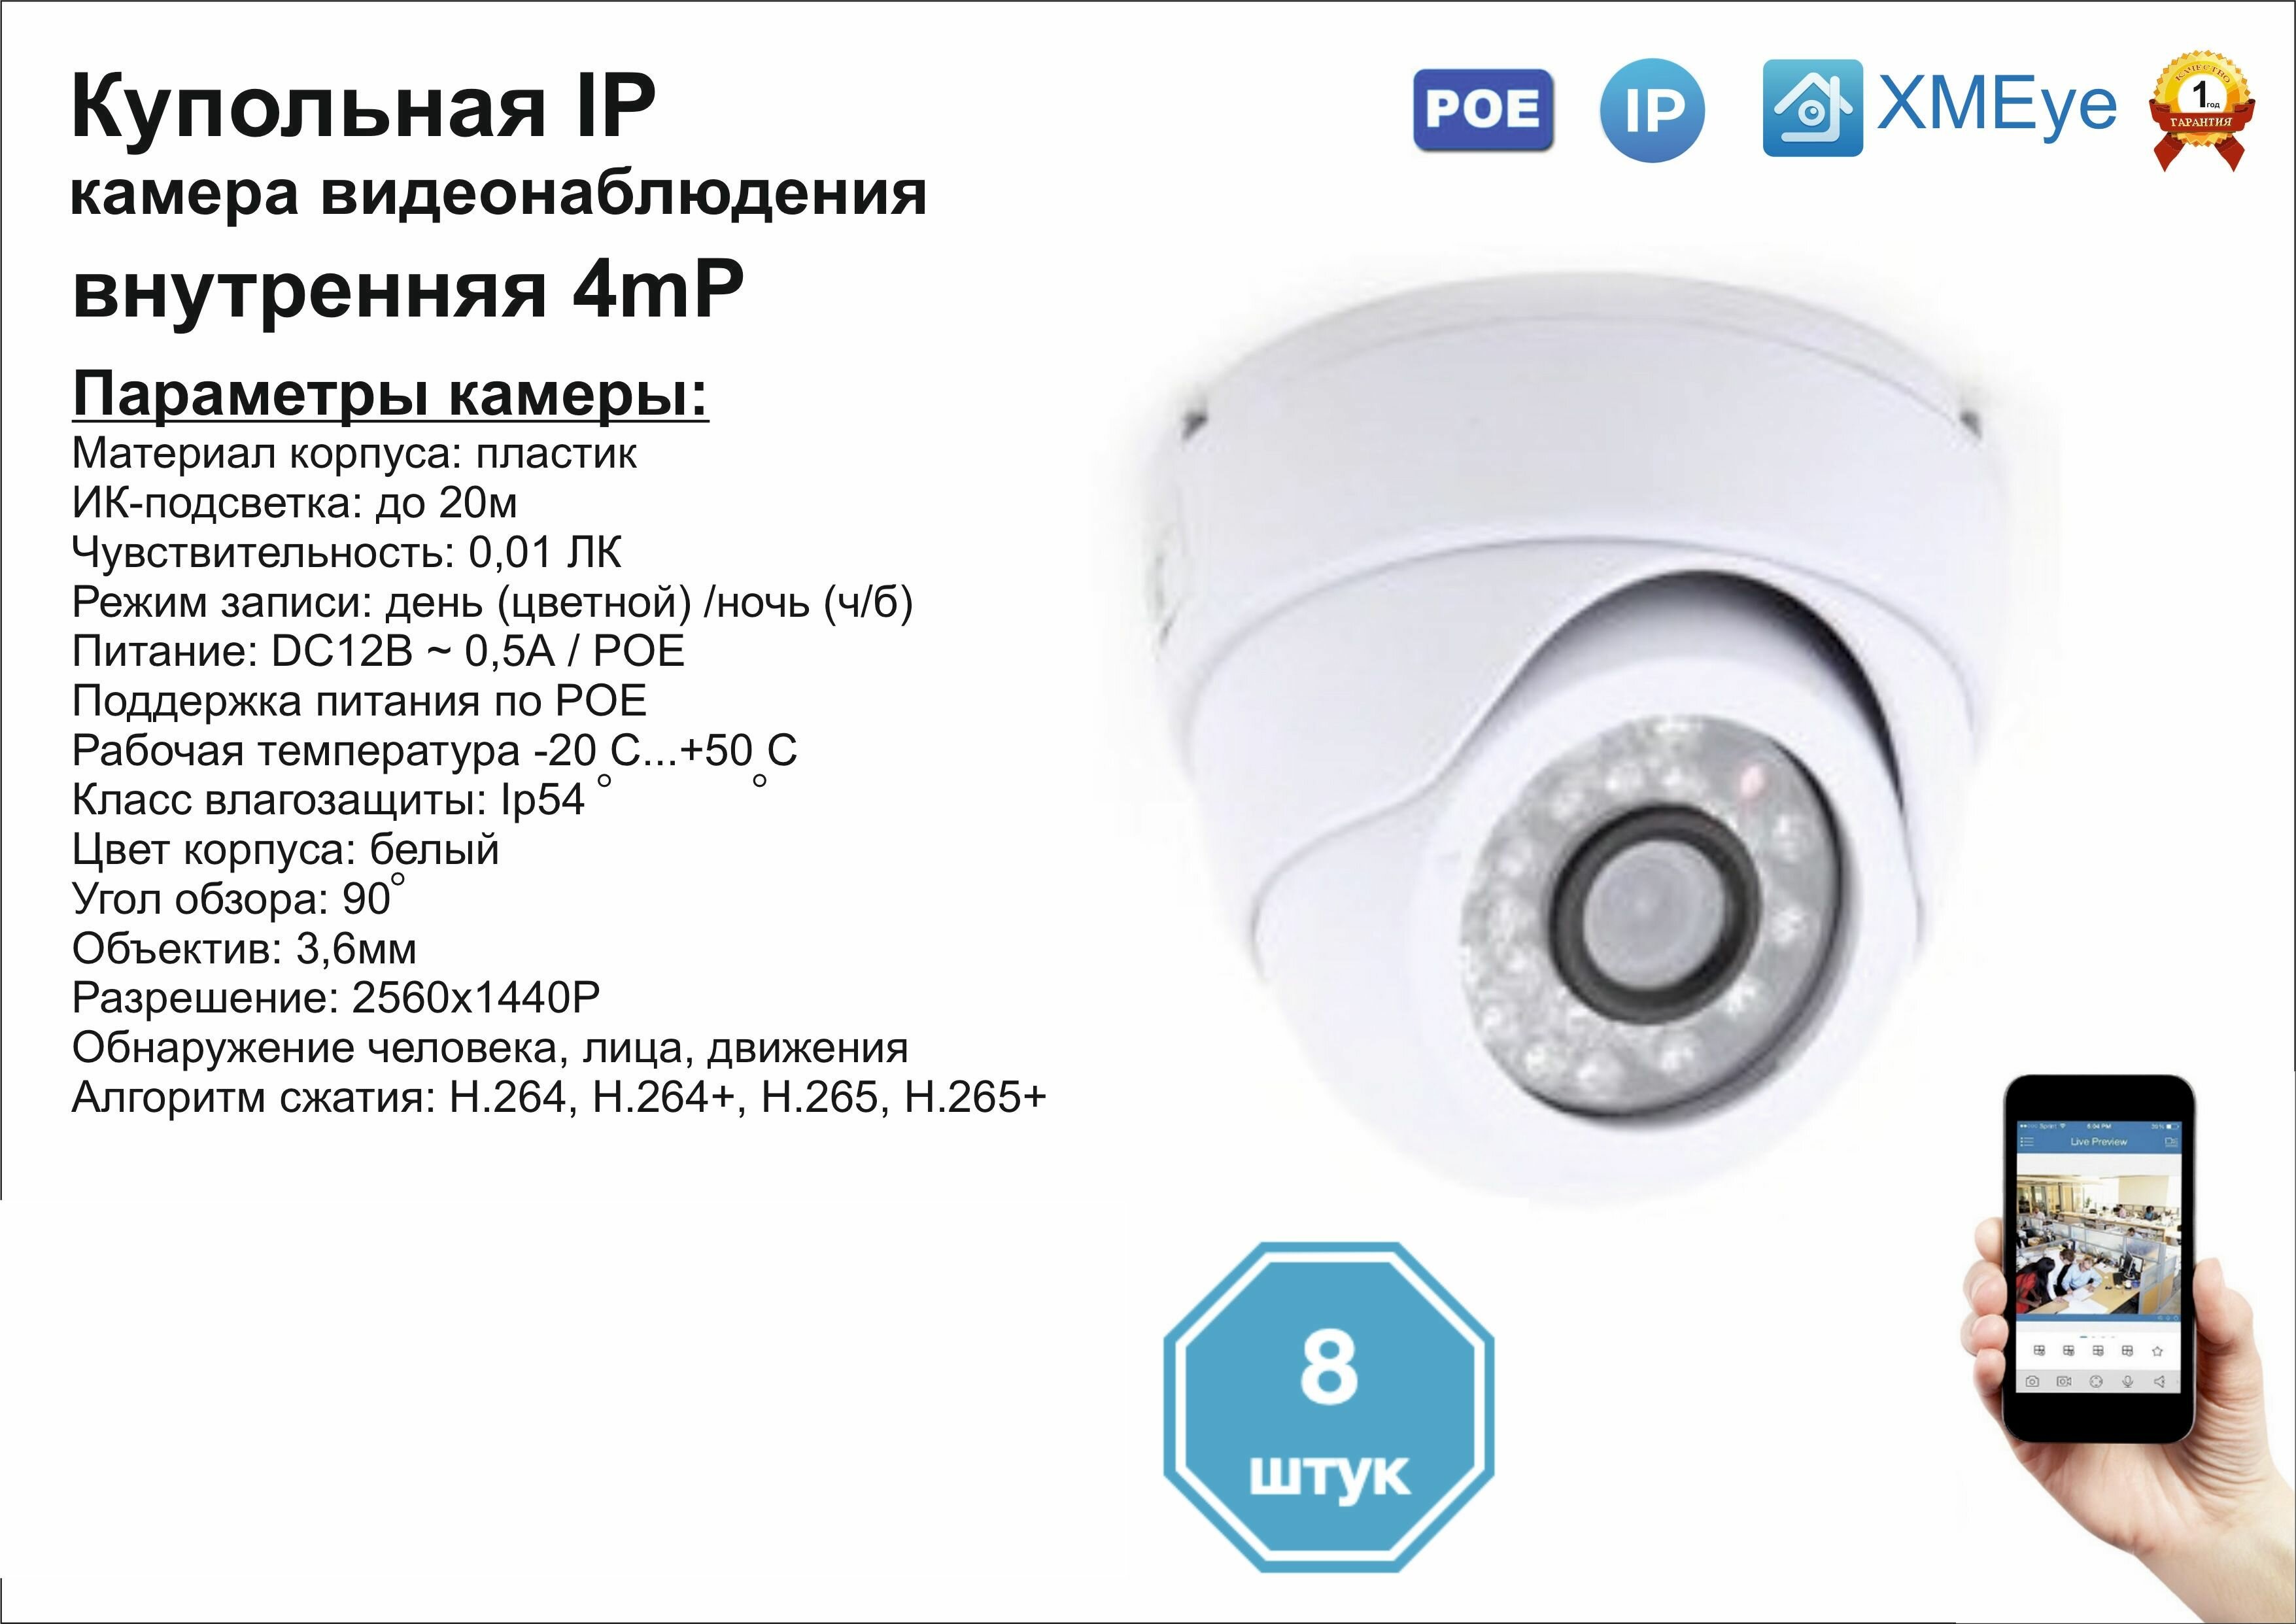 8шт DVW300IP4MP(POE) Внутренняя IP камера 4мП с ИК до 20м